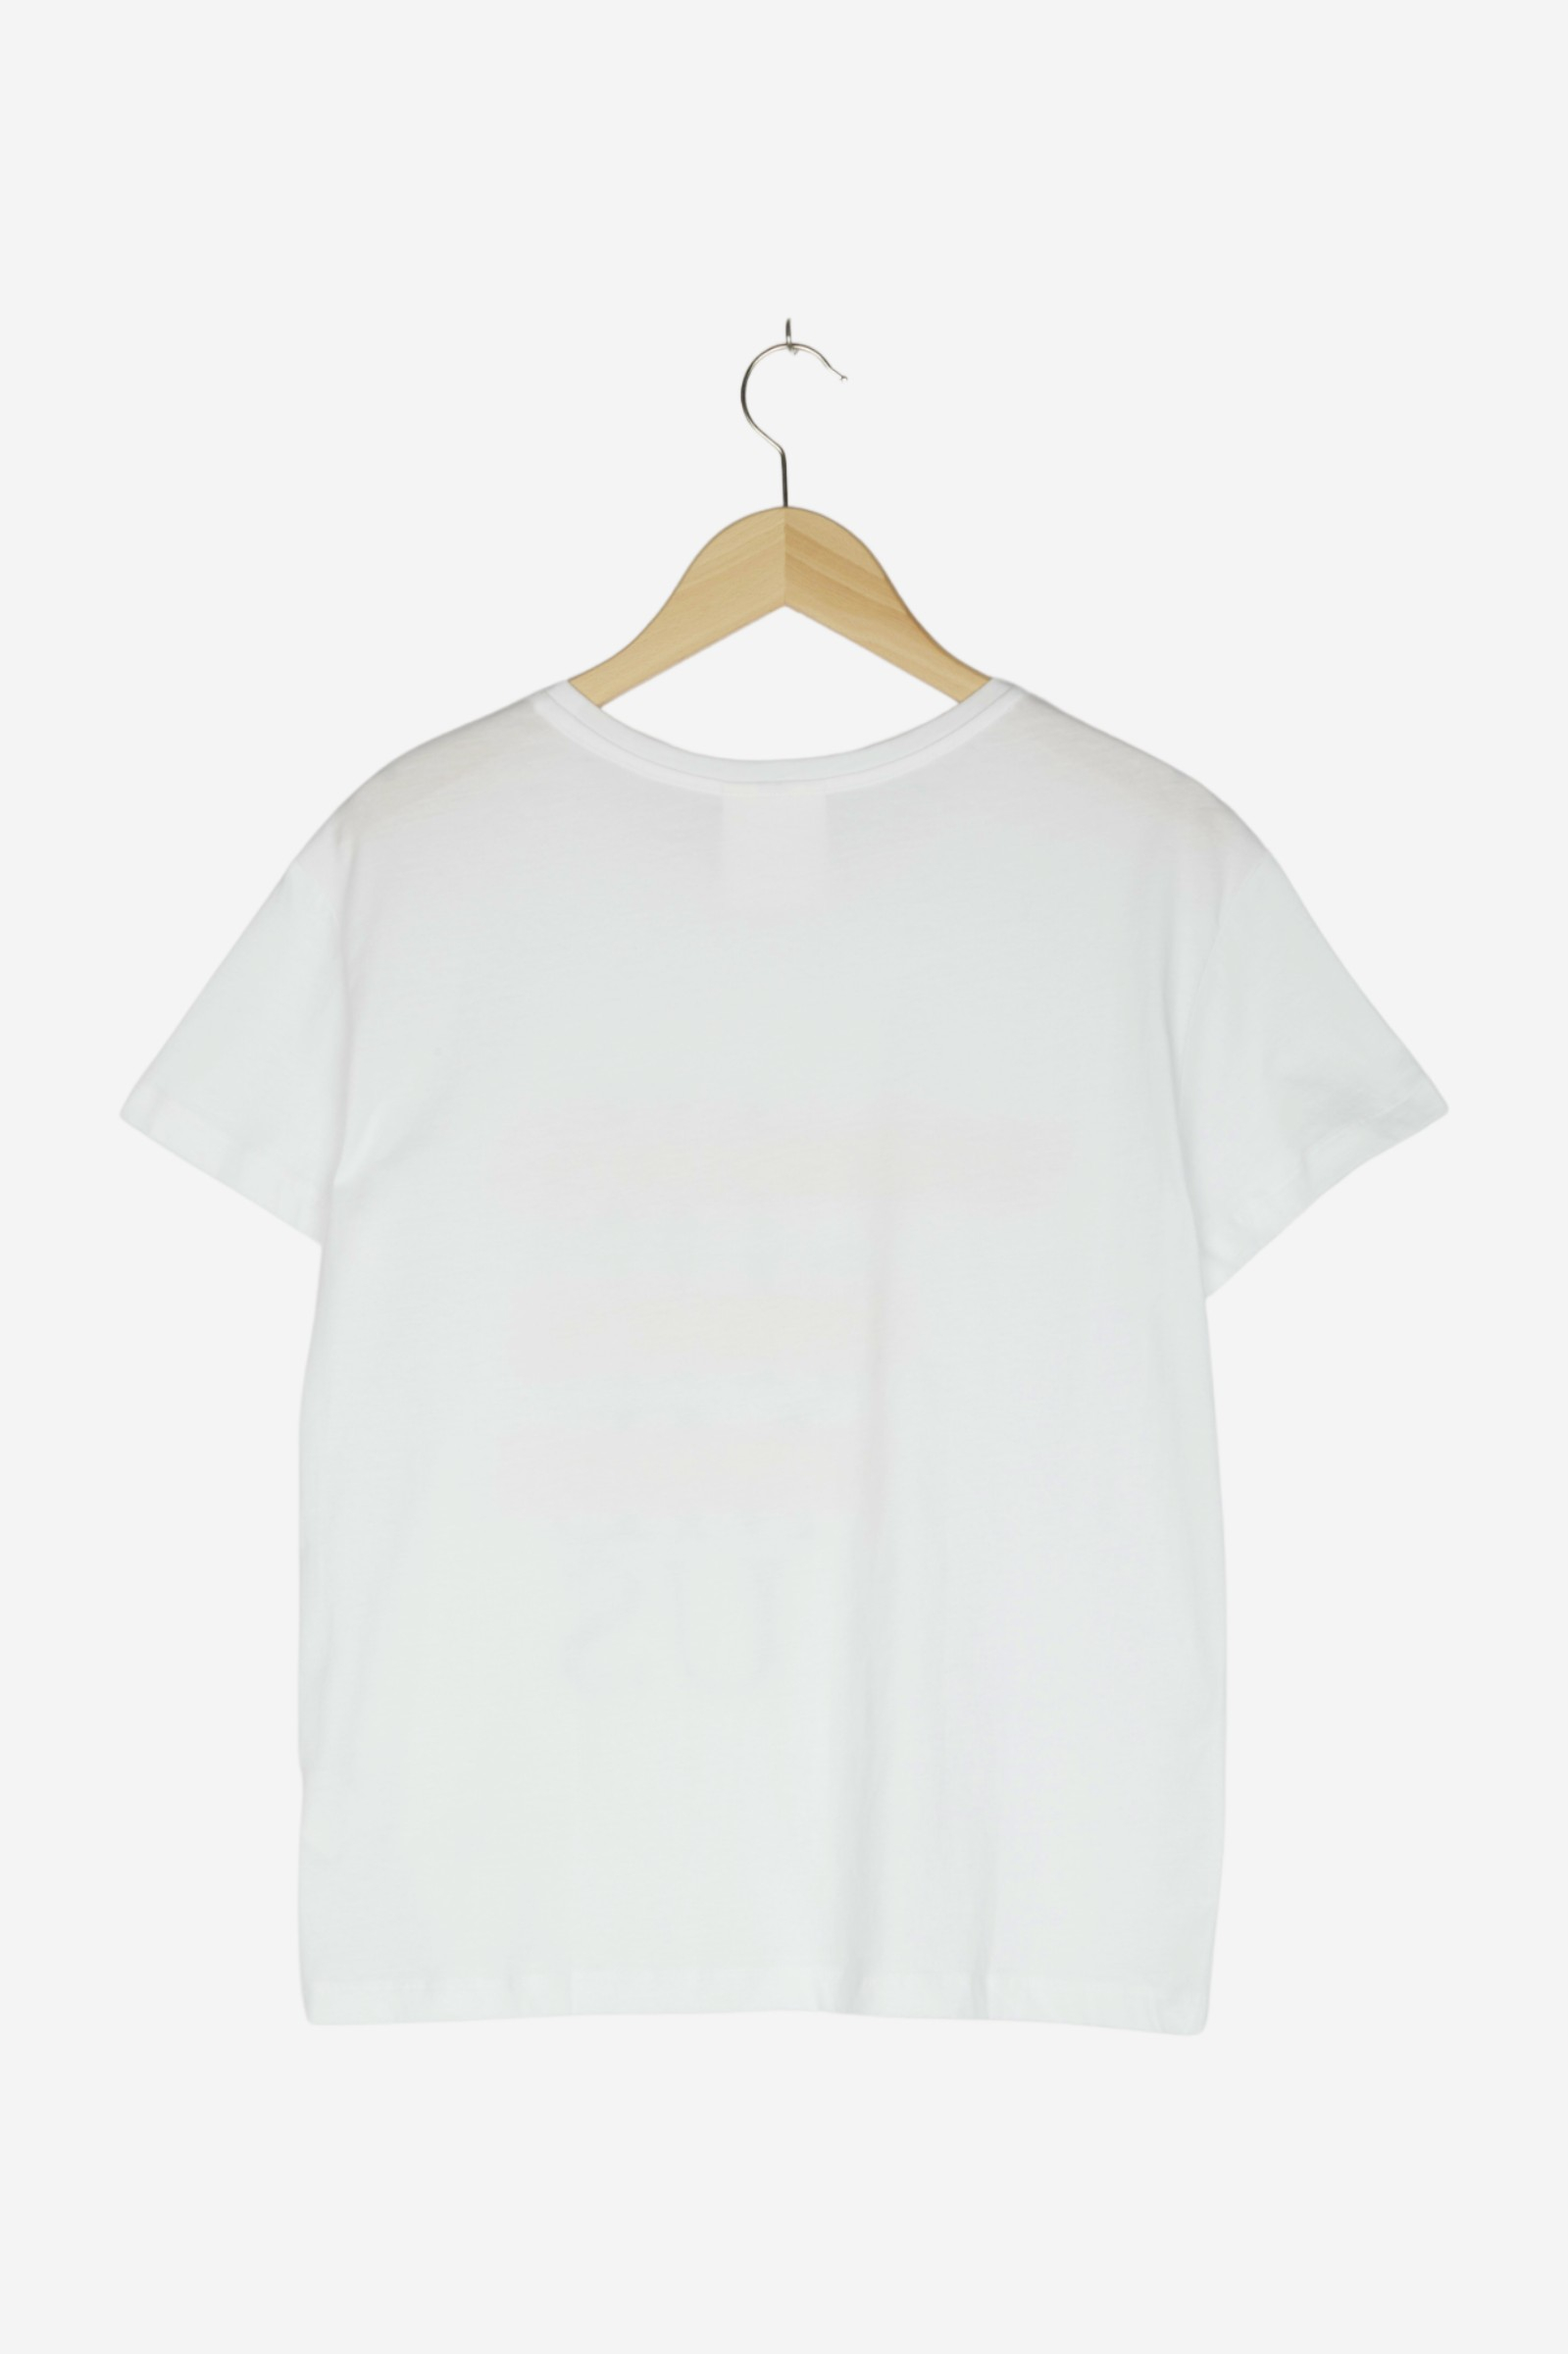 women Tops & T-Shirts Women / Shirts / T-Shirt w/ Print White